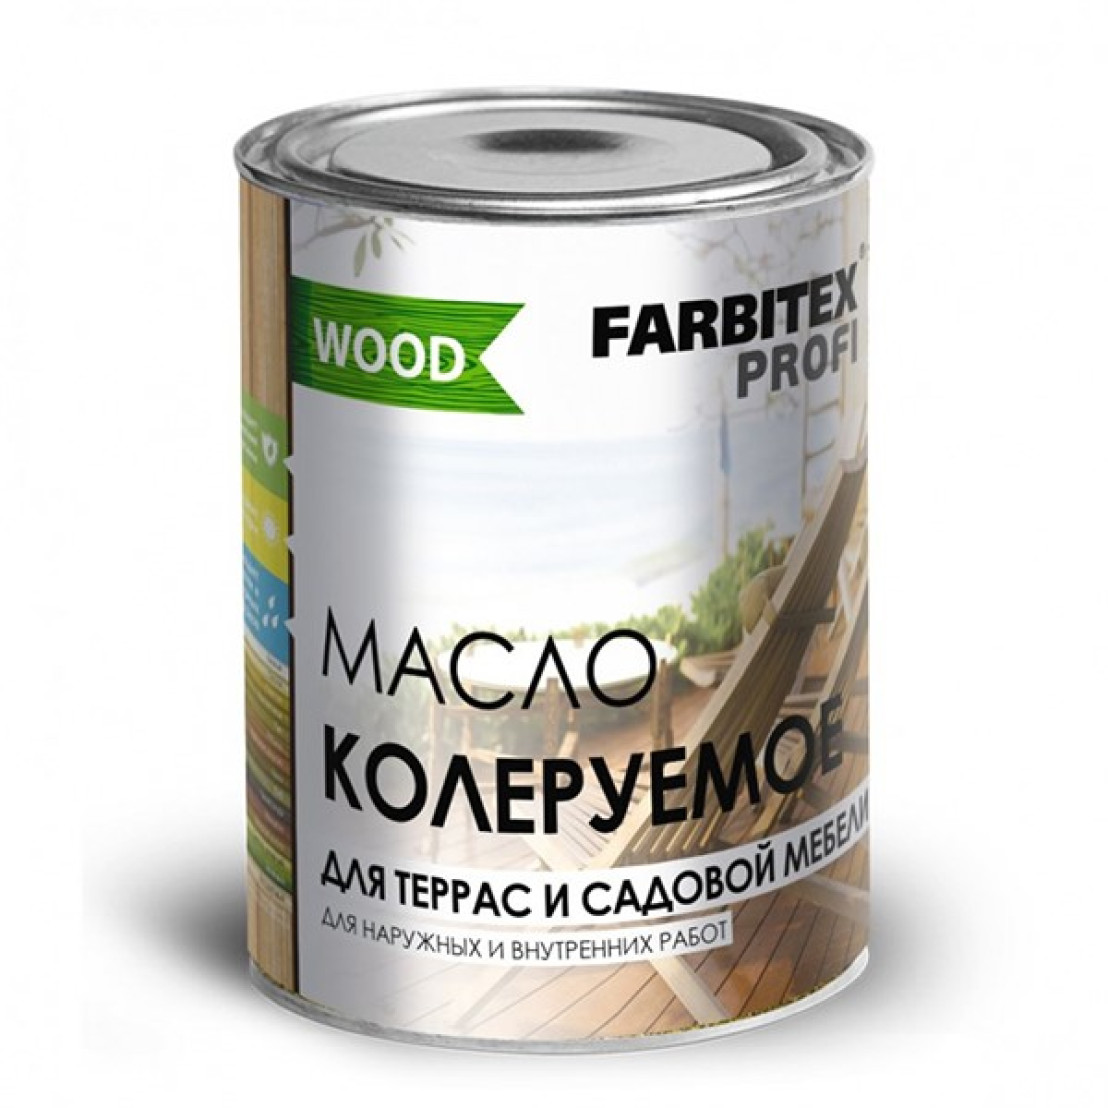 Масло FARBITEX Profi Wood для террас и садовой мебели, бесцветный, 3 л